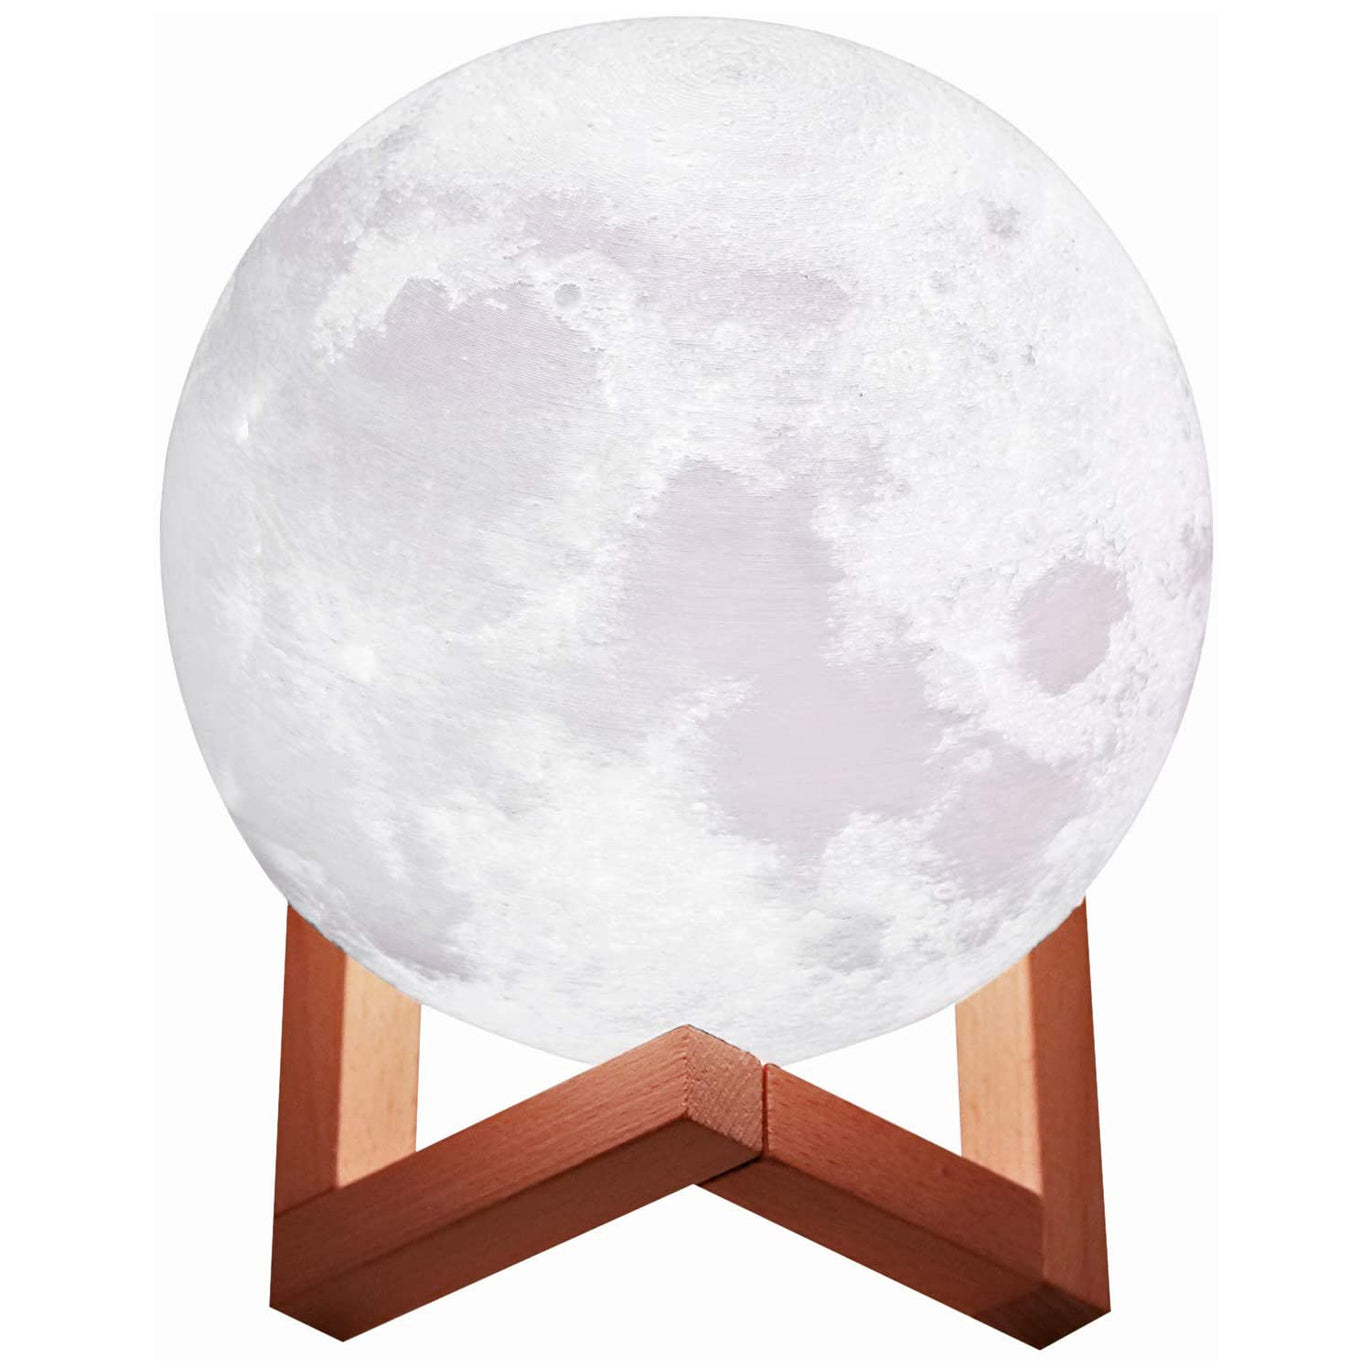 PROZOR 3D Moon Lamp 15cm